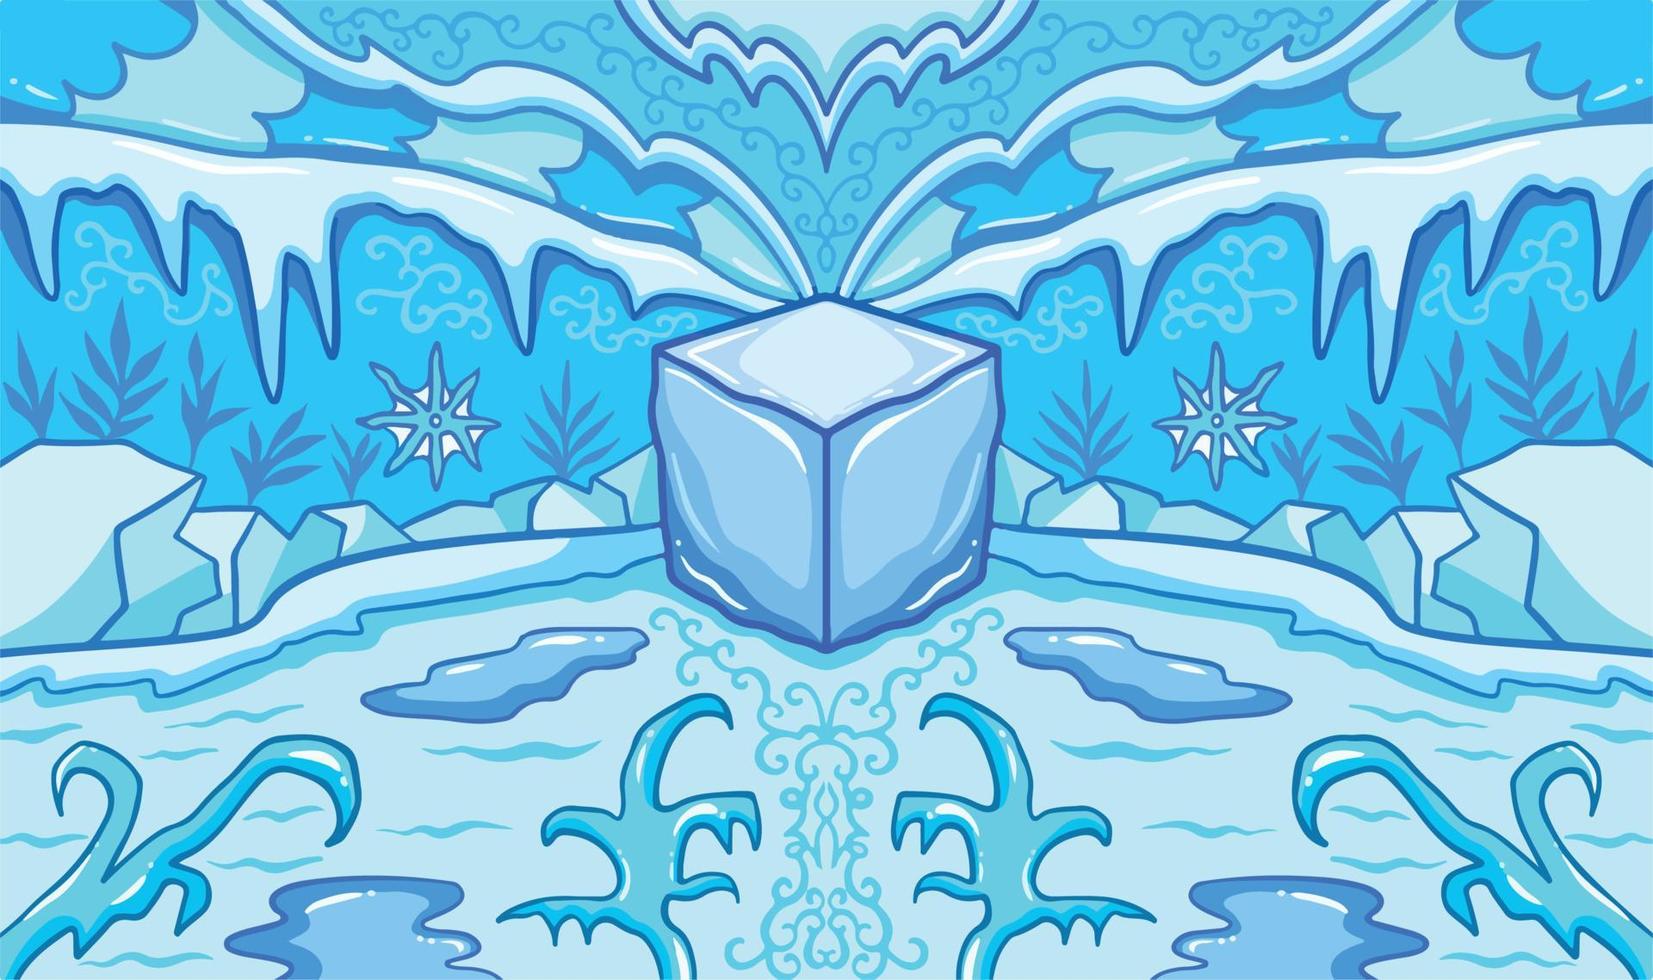 fond d'illustration vectorielle sur le thème de l'âge de glace bleu froid. fond d'écran symétrique avec un style d'art plat de dessin animé et des dessins au trait épurés, isolés et colorés. œuvres d'art sur le thème des températures glaciales et enneigées. vecteur